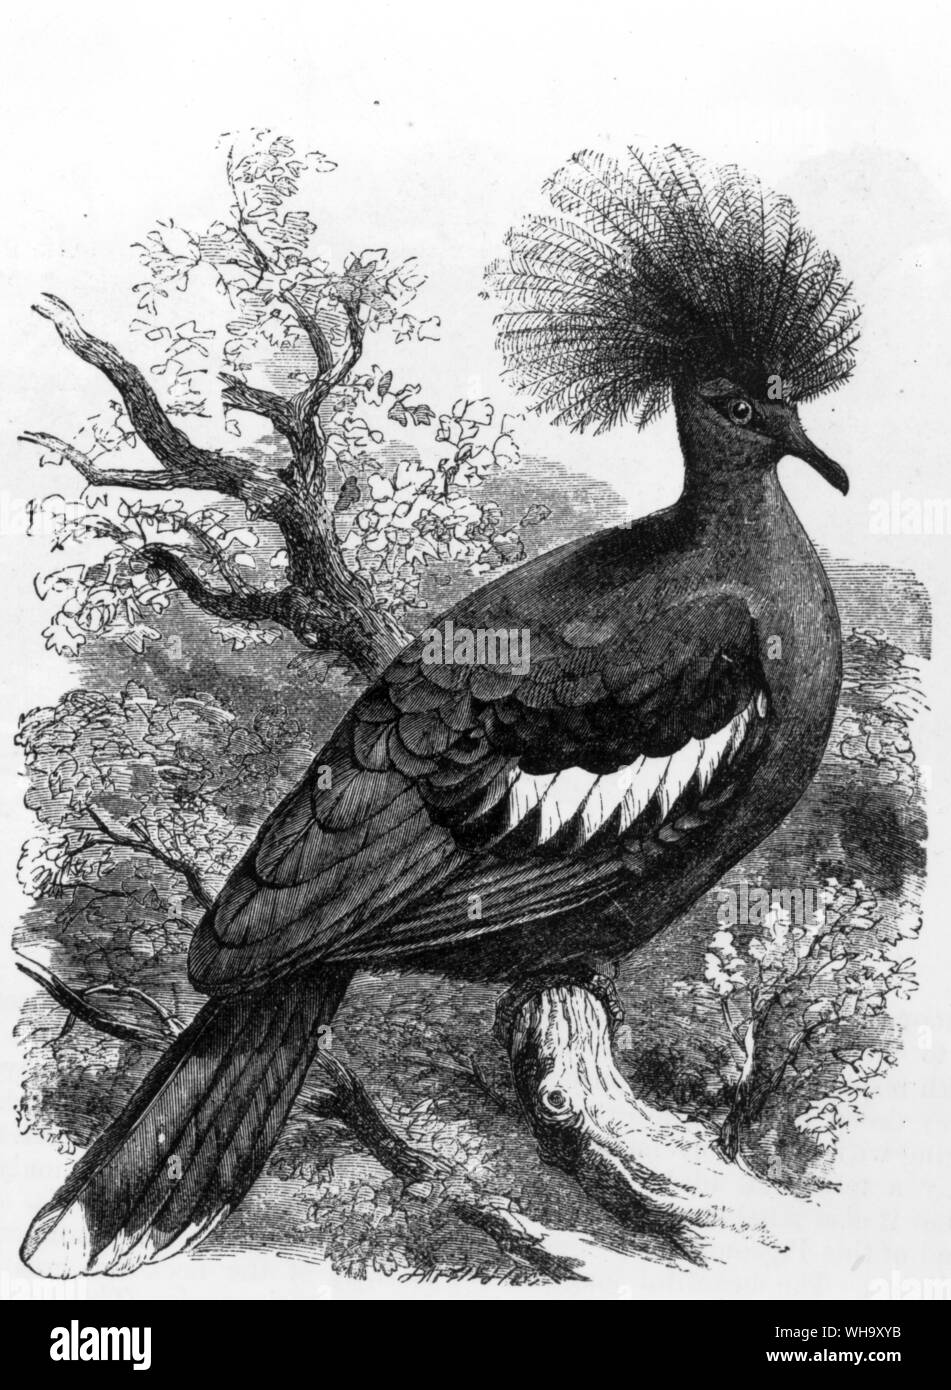 Blu-incoronato piccione (Goura cristata), una stretta parente in vita del extincs Choiseul Crested Pigeon. Incisione da Cassell di Storia Naturale di Londra (1889) Foto Stock